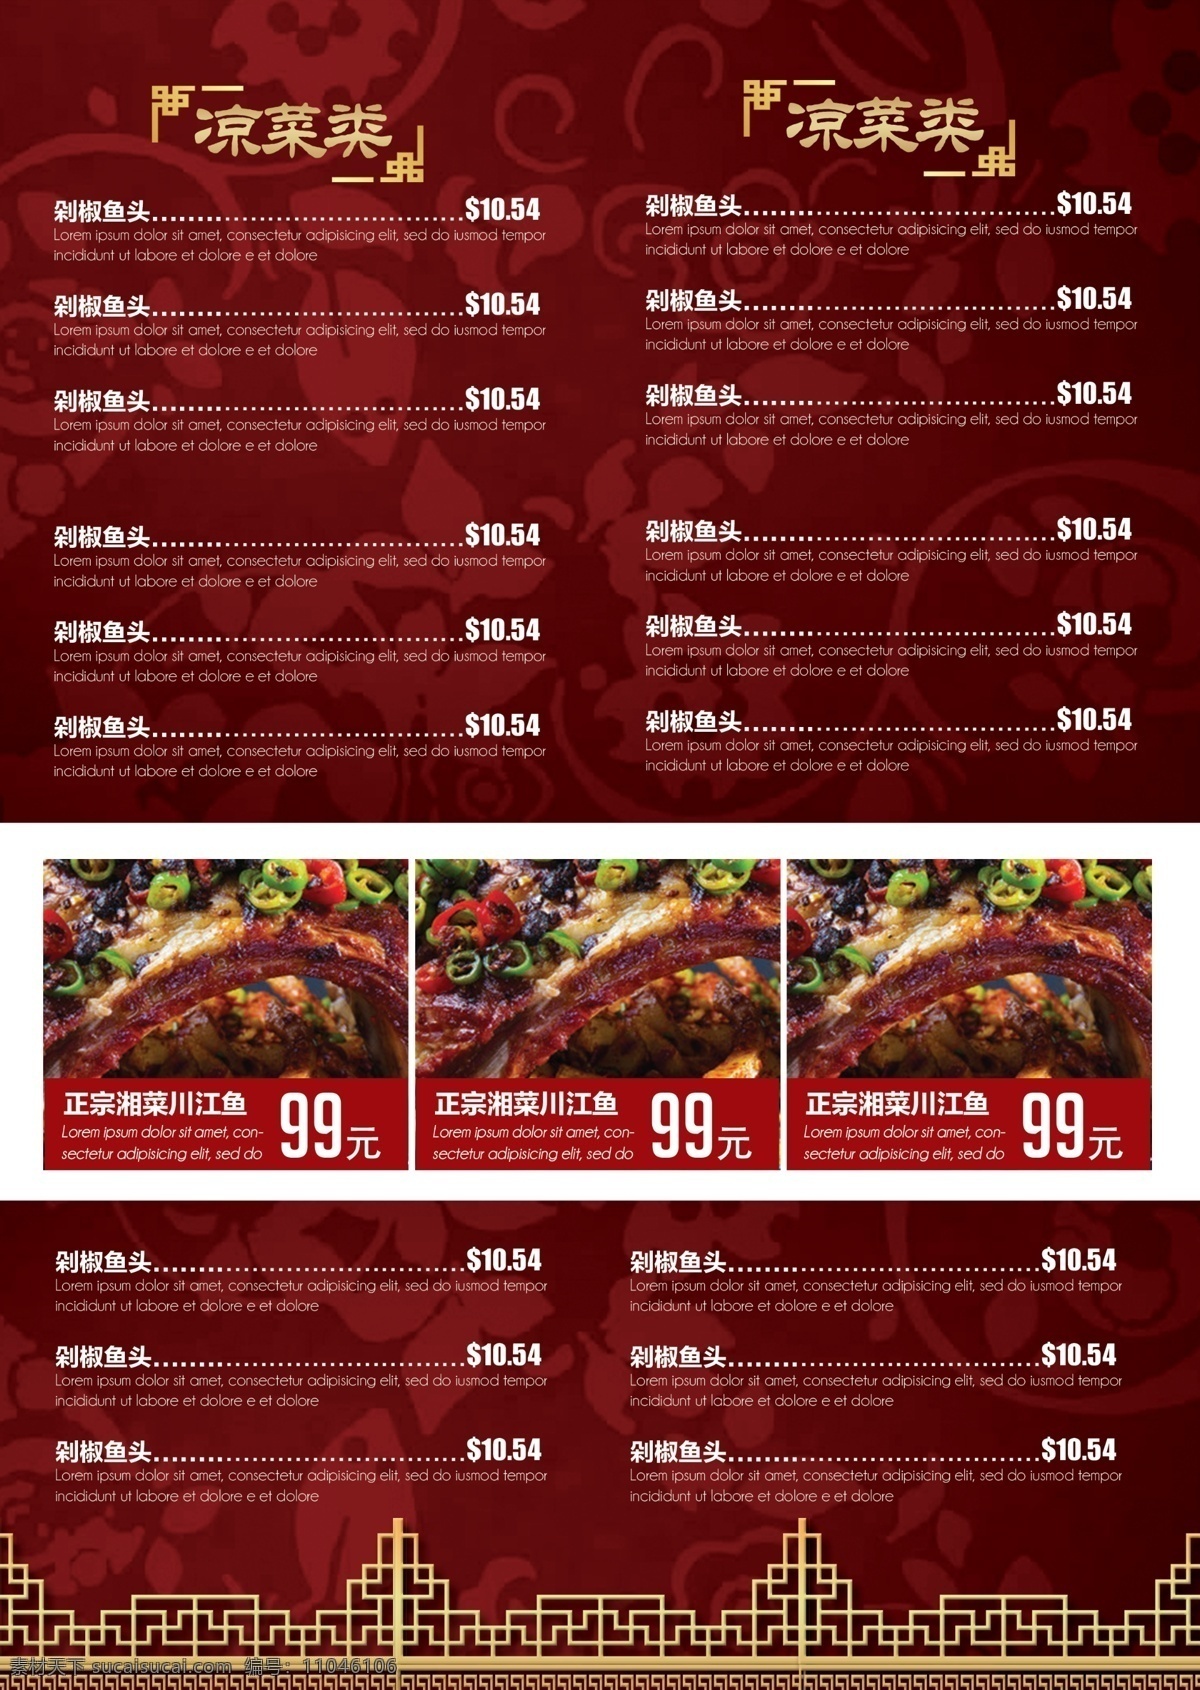 中餐厅宣传单 菜单 单页 中餐厅菜单 餐厅菜单 餐饮菜单 美食菜单 宣传单 美食传达 川菜传单 传单设计